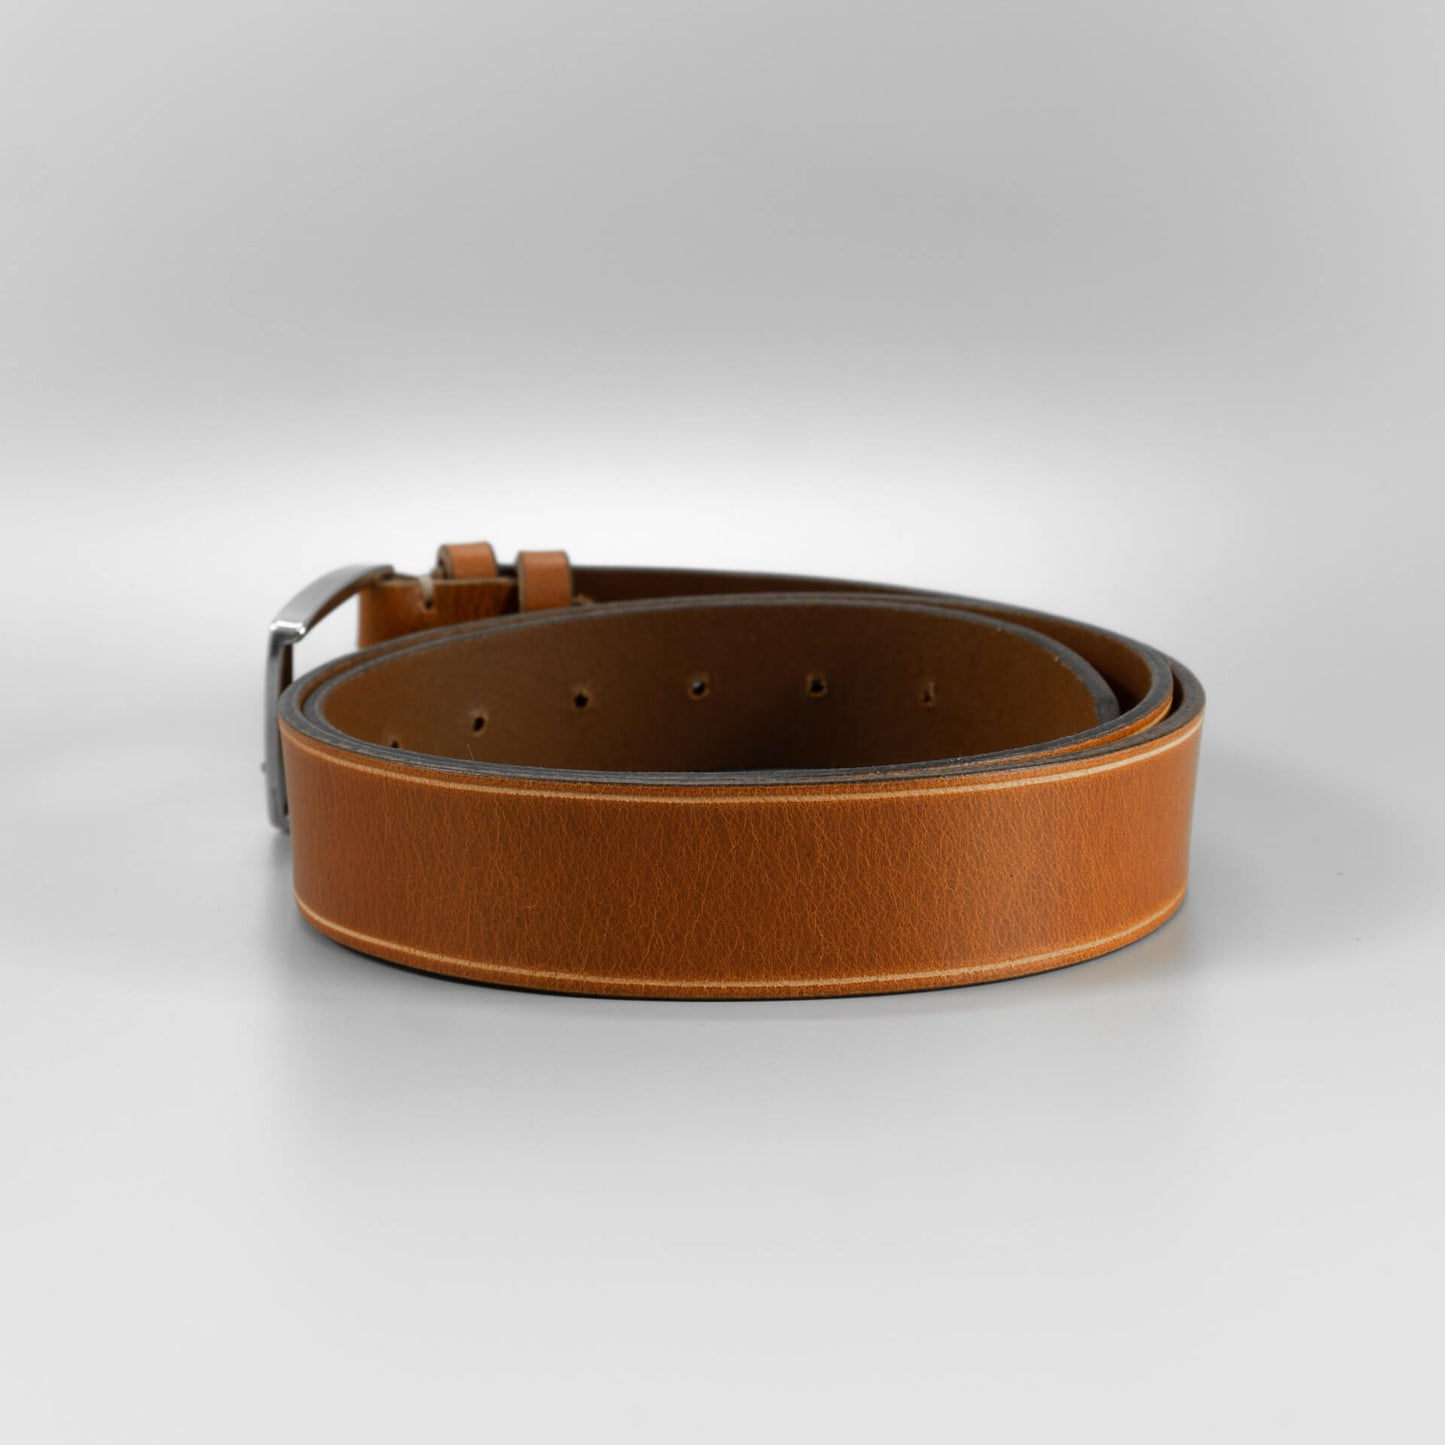 Hnedý pánsky kožený opasok do riflí "Brown 35mm" široký 3,5 cm